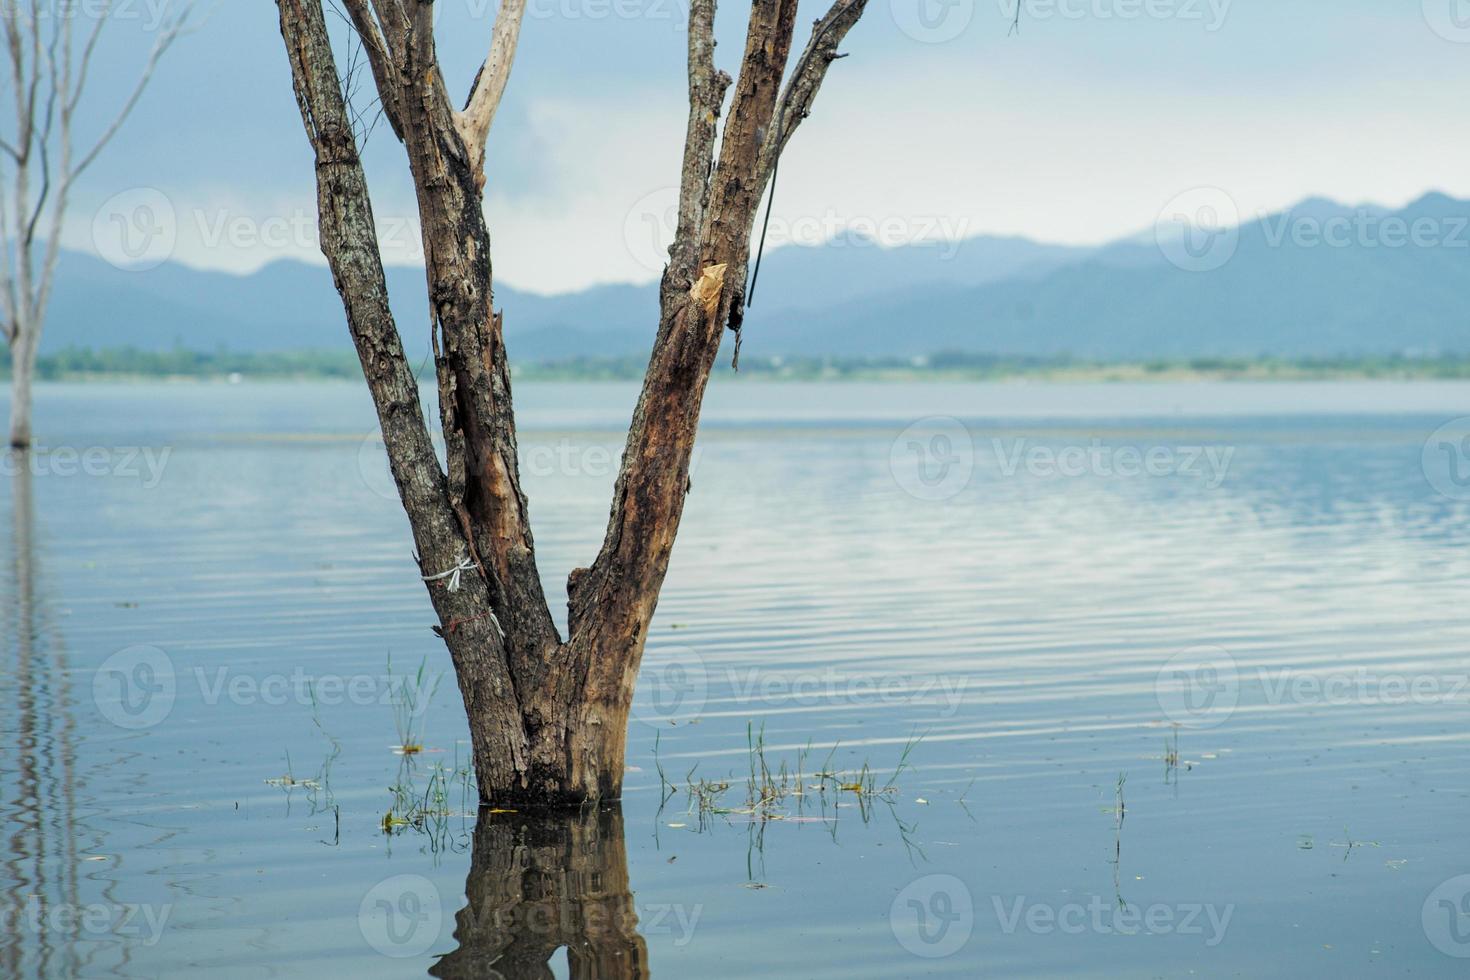 el cuerpo del árbol muerto se encuentra en el agua con el paisaje y el lago al fondo foto